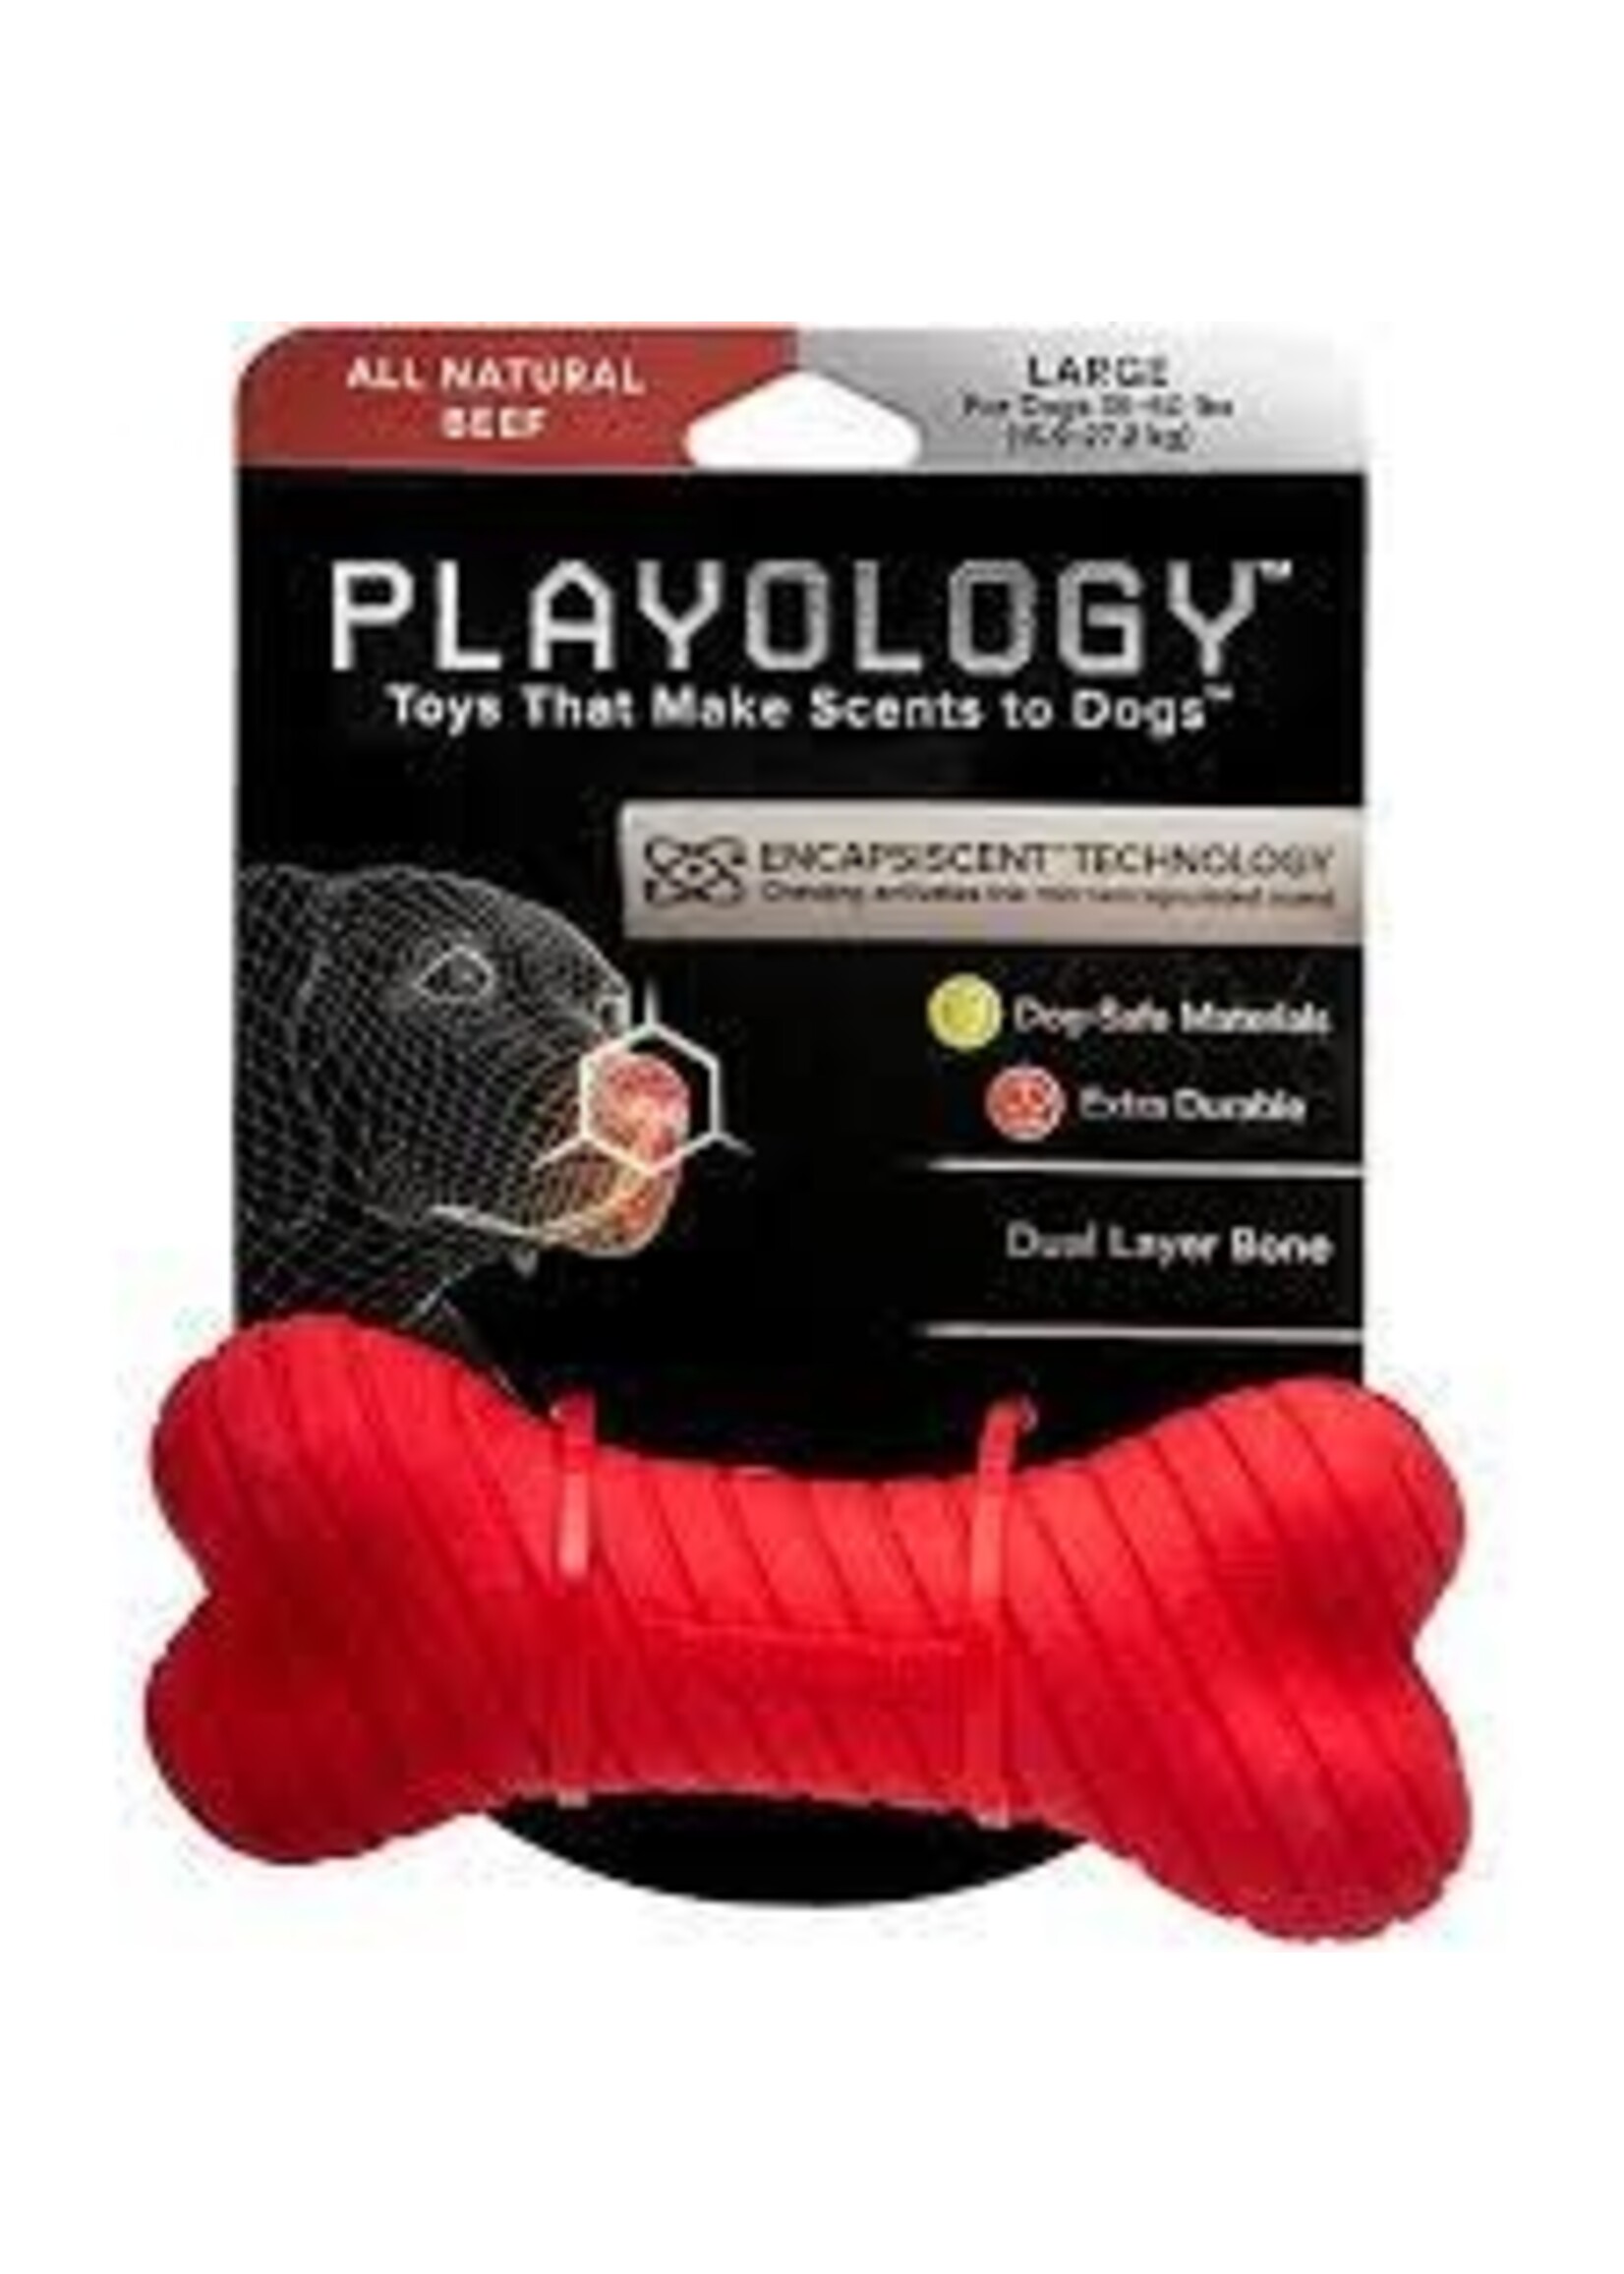 Playology Playology Dual Layer Bone